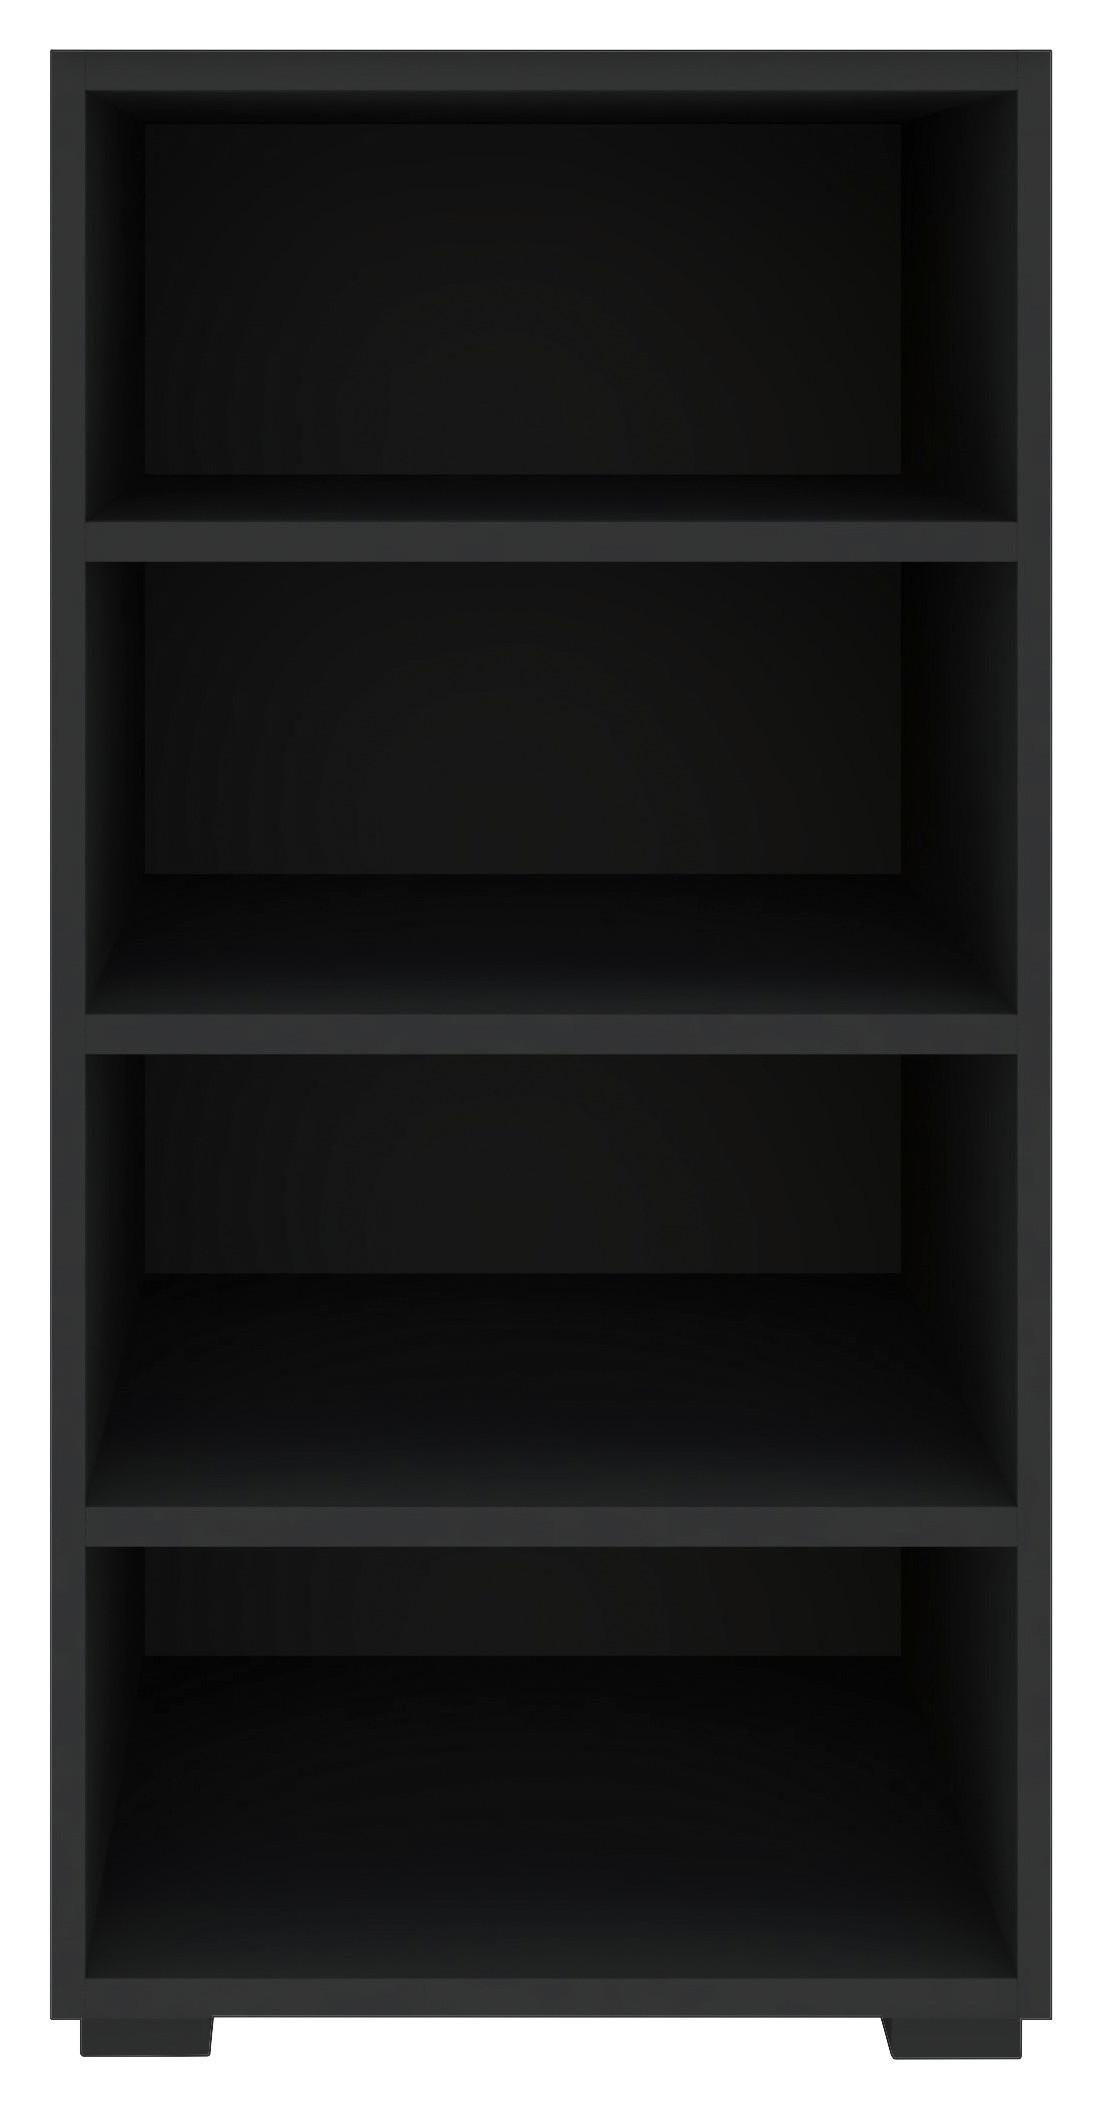 Regál Unit-Elements Maxi - černá/antracitová, Moderní, kompozitní dřevo (45,6/89,6/40cm) - Ondega